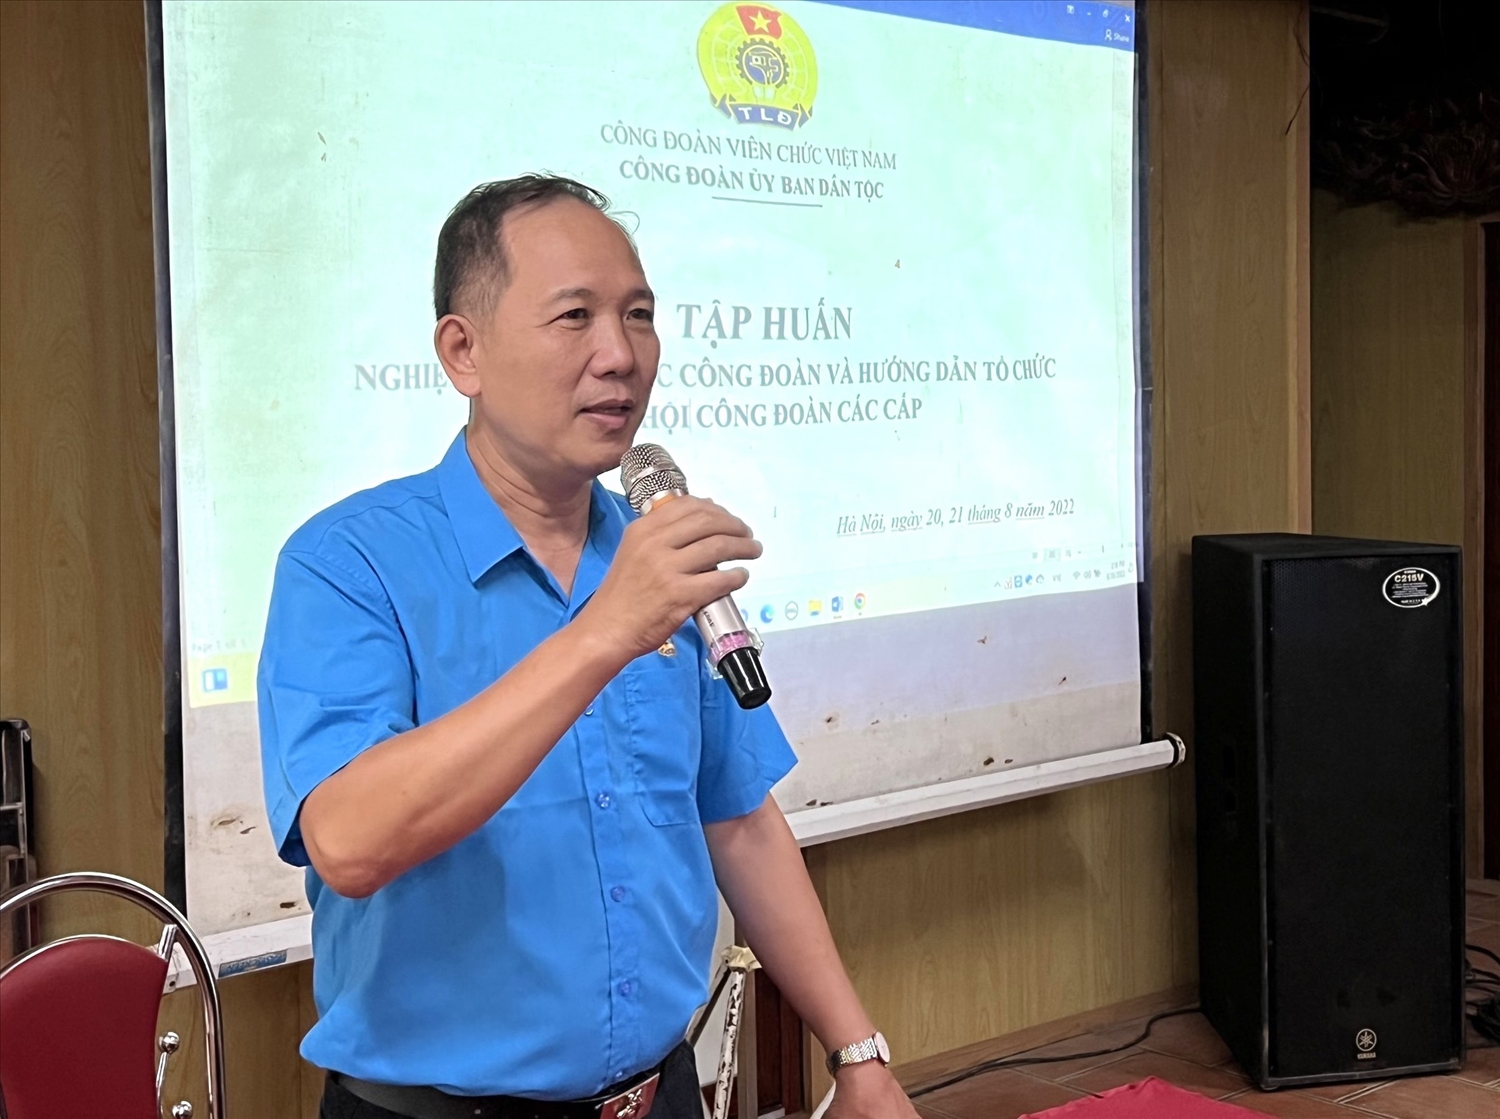 Đồng chí Nguyễn Quang Hải, Chủ tịch Công đoàn, Tổng Biên tập Tạp chí Dân tộc trao đổi nghiệp vụ tổ chức Đại hội công đoàn các cấp 